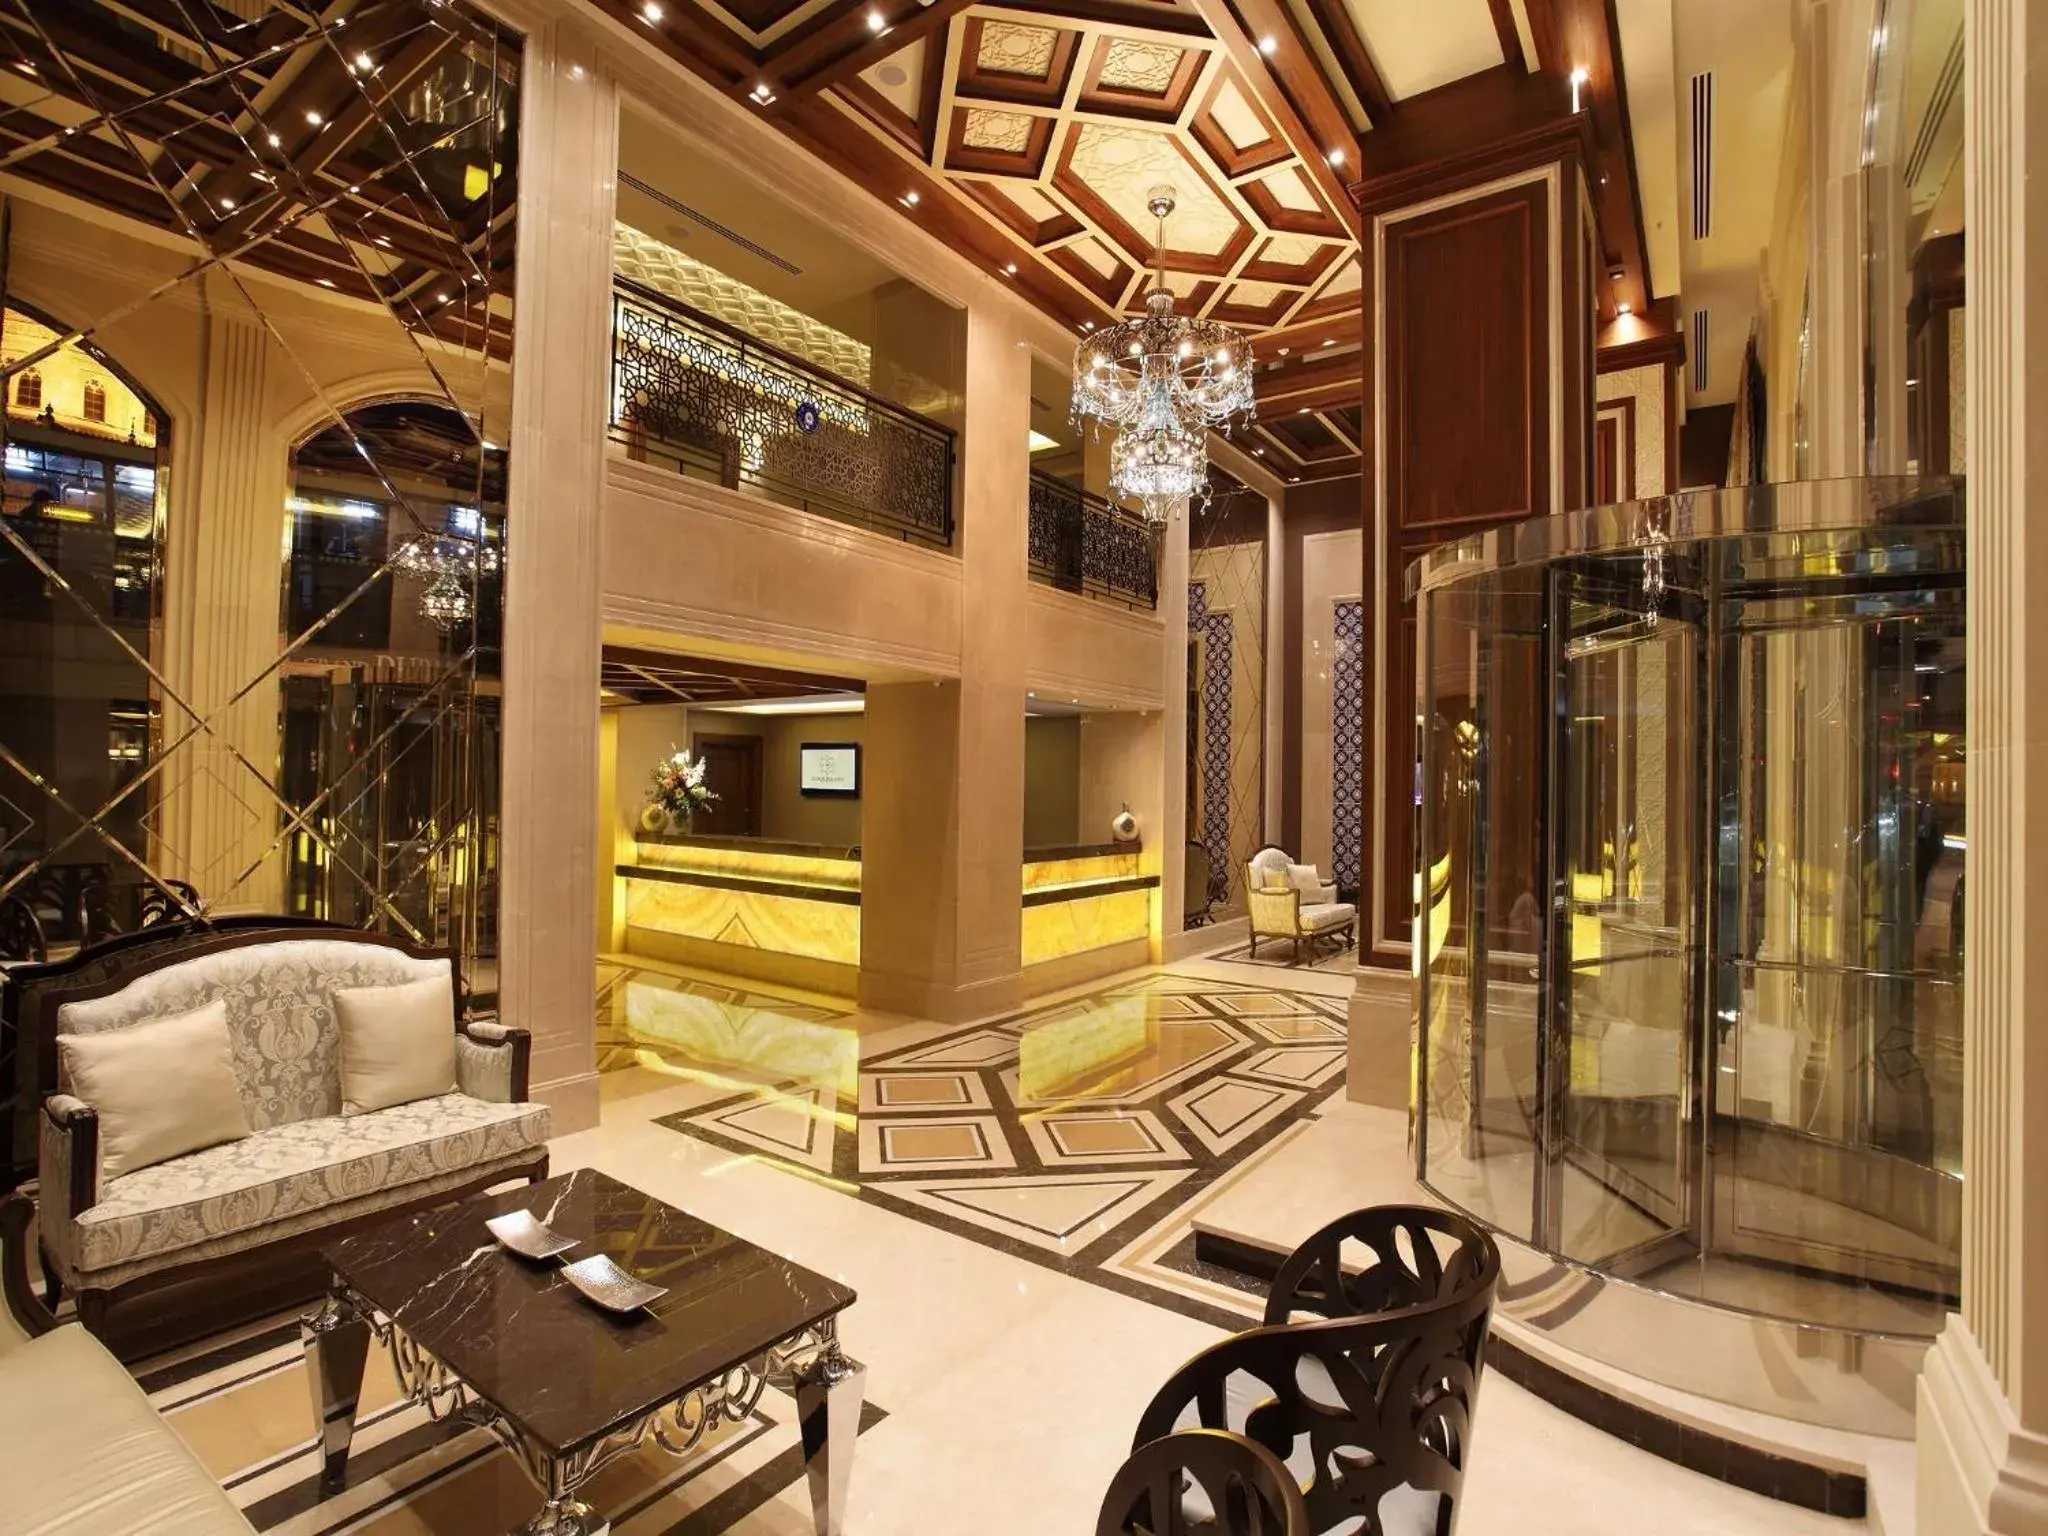 Lobby or reception, Lobby/Reception in Grand Durmaz Hotel